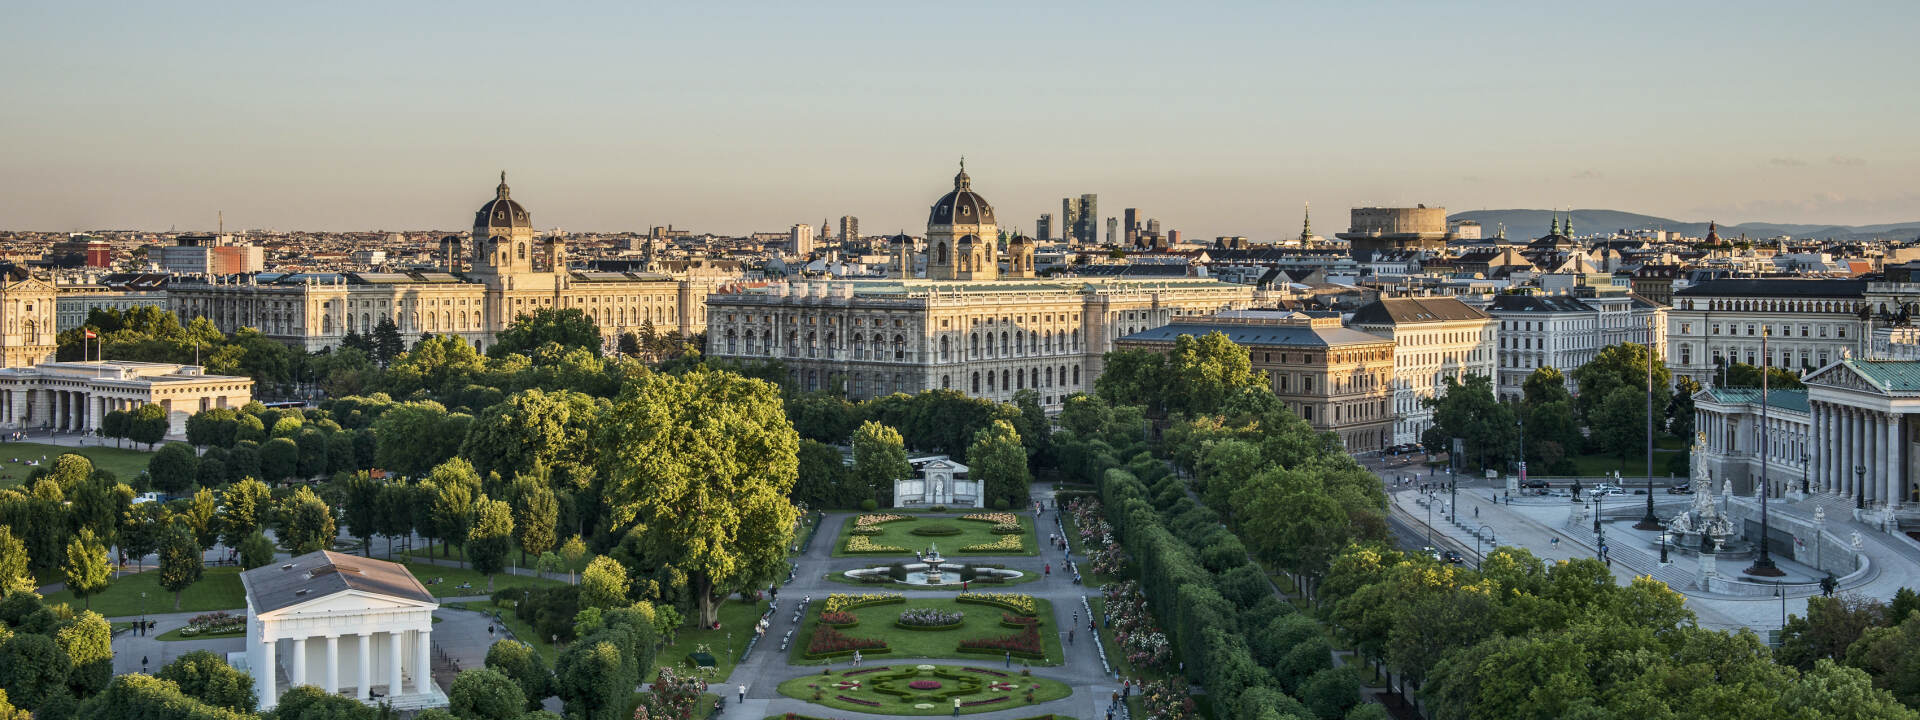 Wien - Blick auf Volksgarten, Museen und Parlament © WienTourismus | Christian Stemper